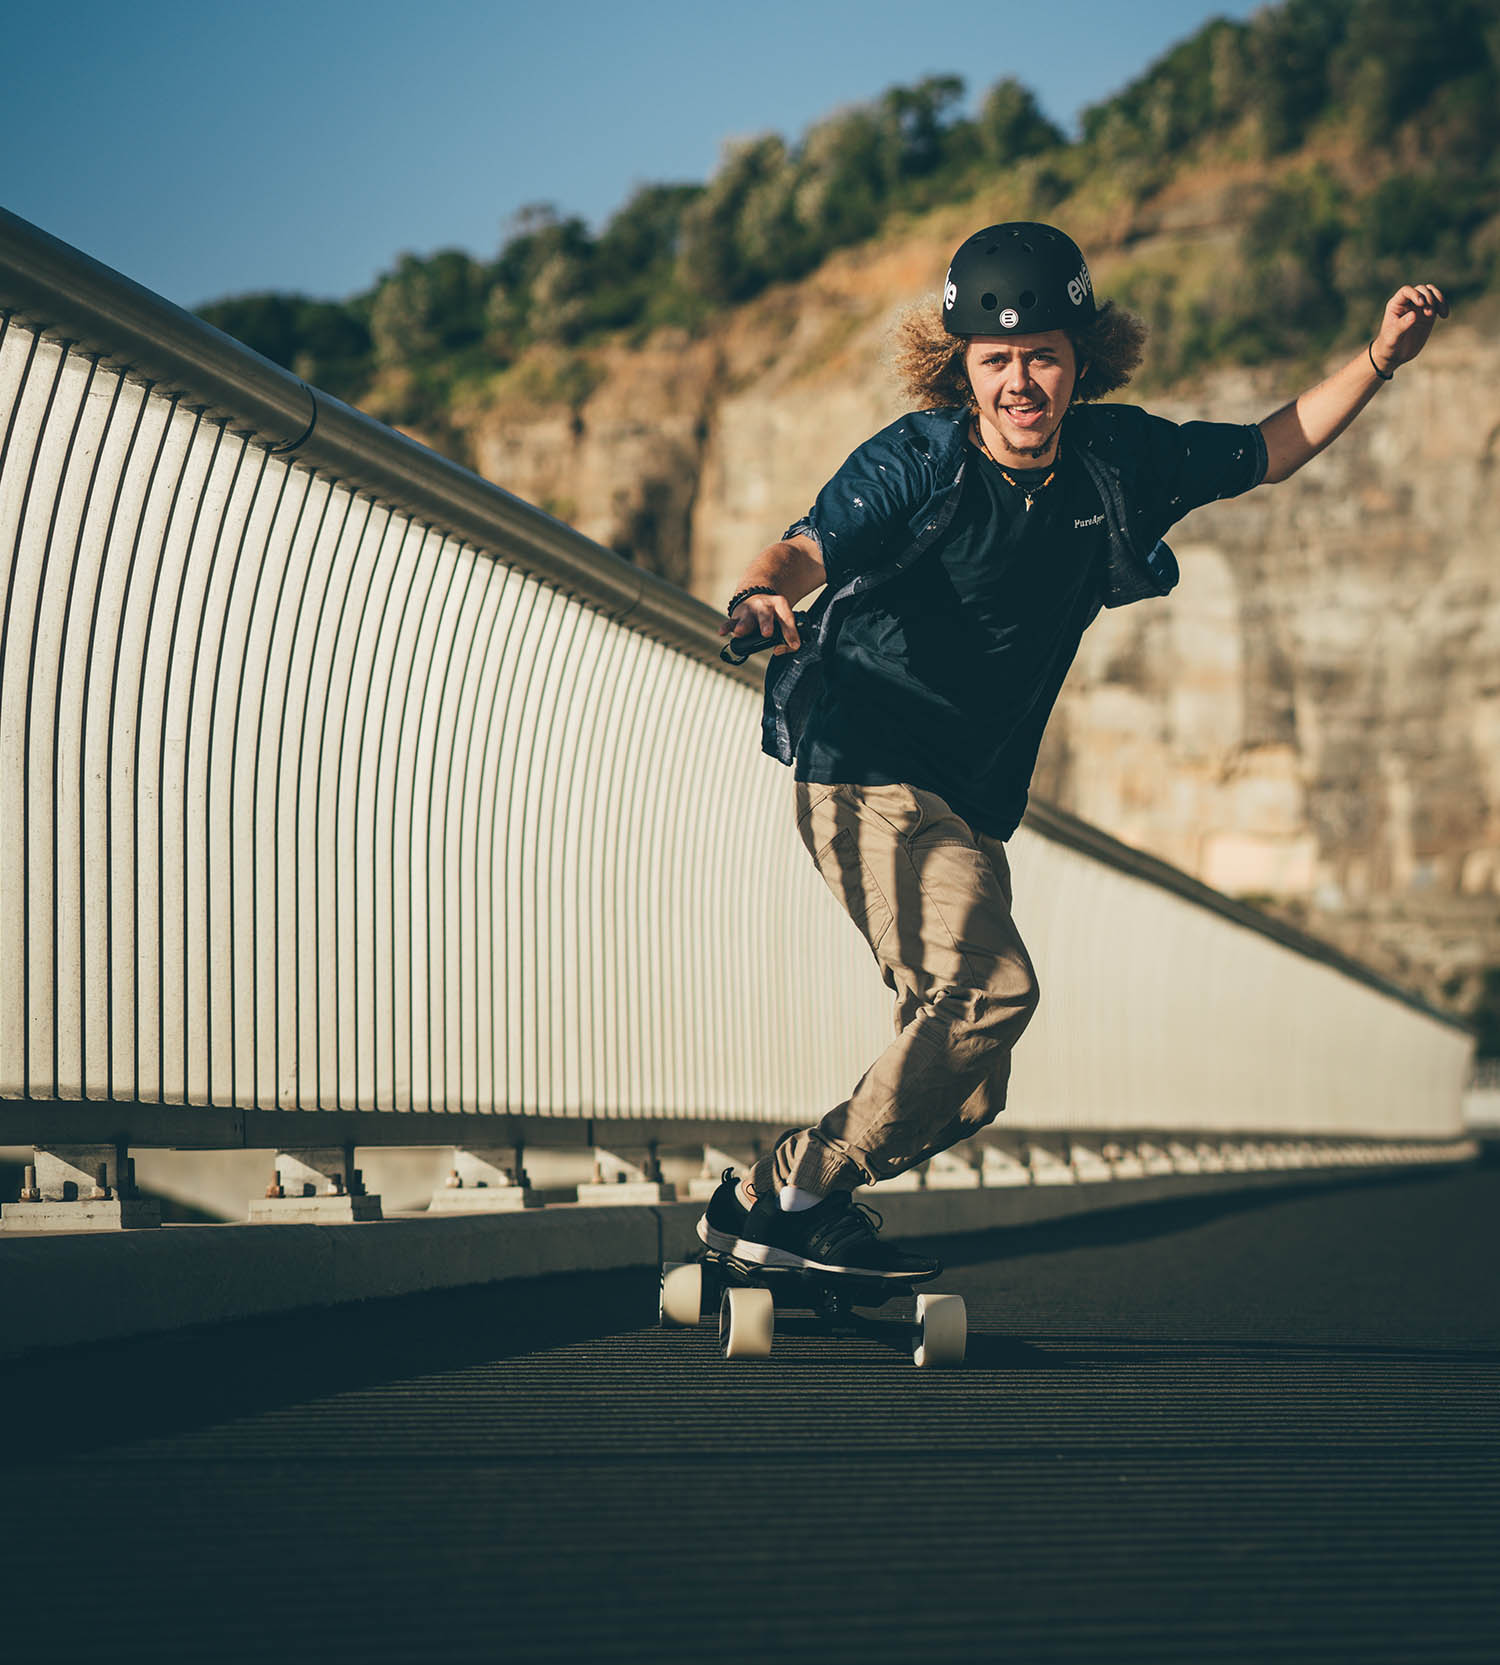 Shop Street Skateboards | Online Electric Evolve – Skateboards USA Evolve Skateboards